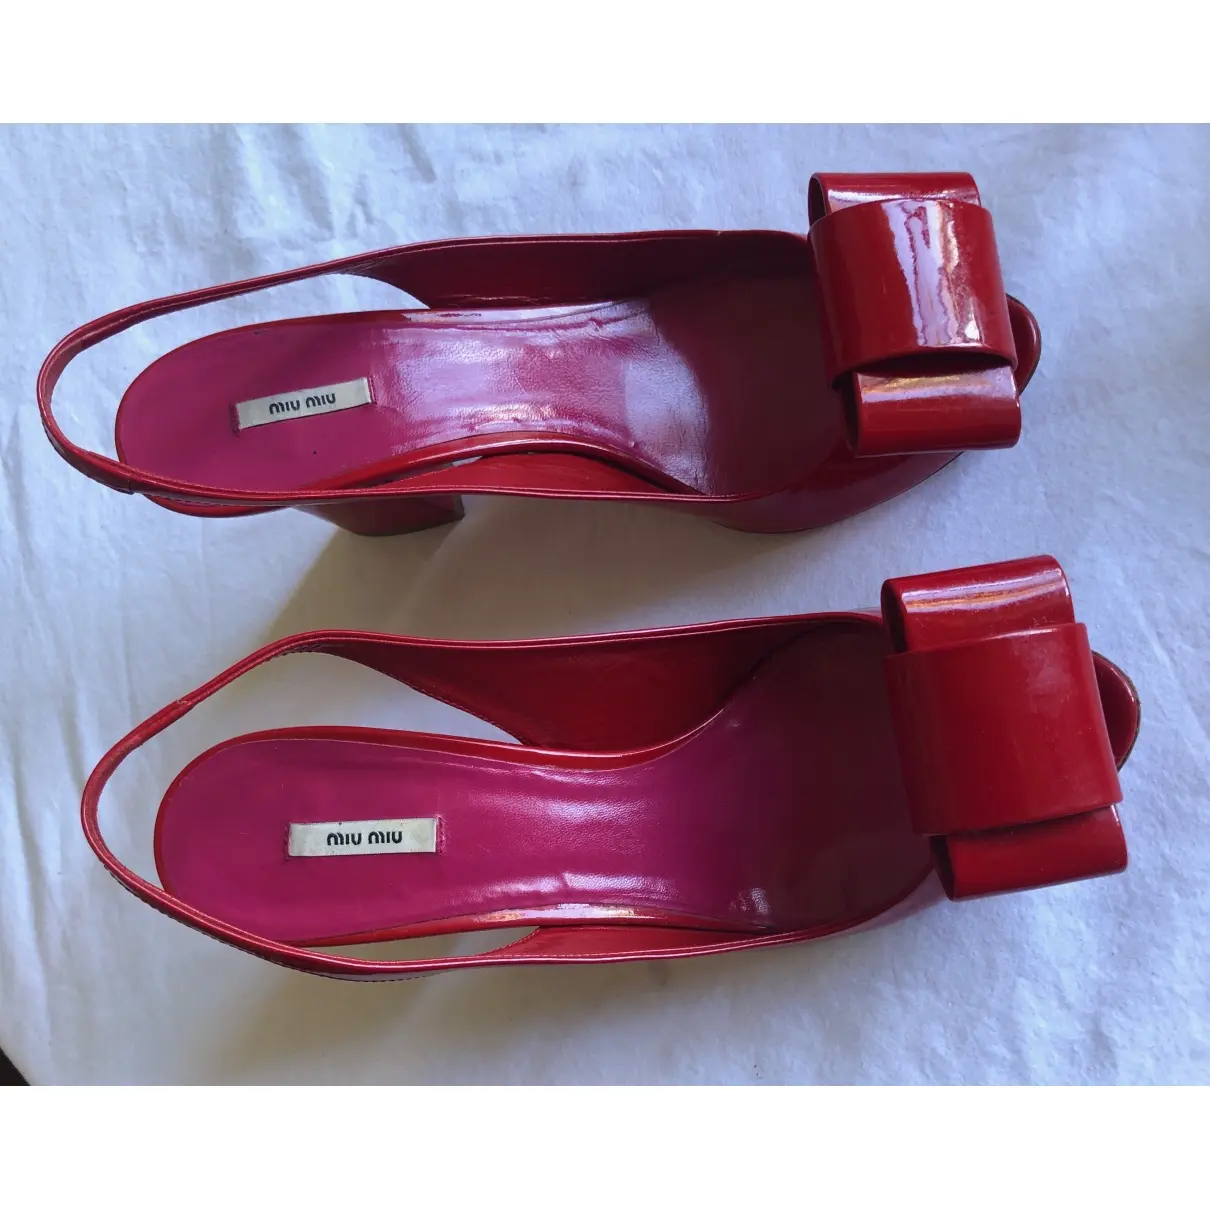 Patent leather sandals Miu Miu